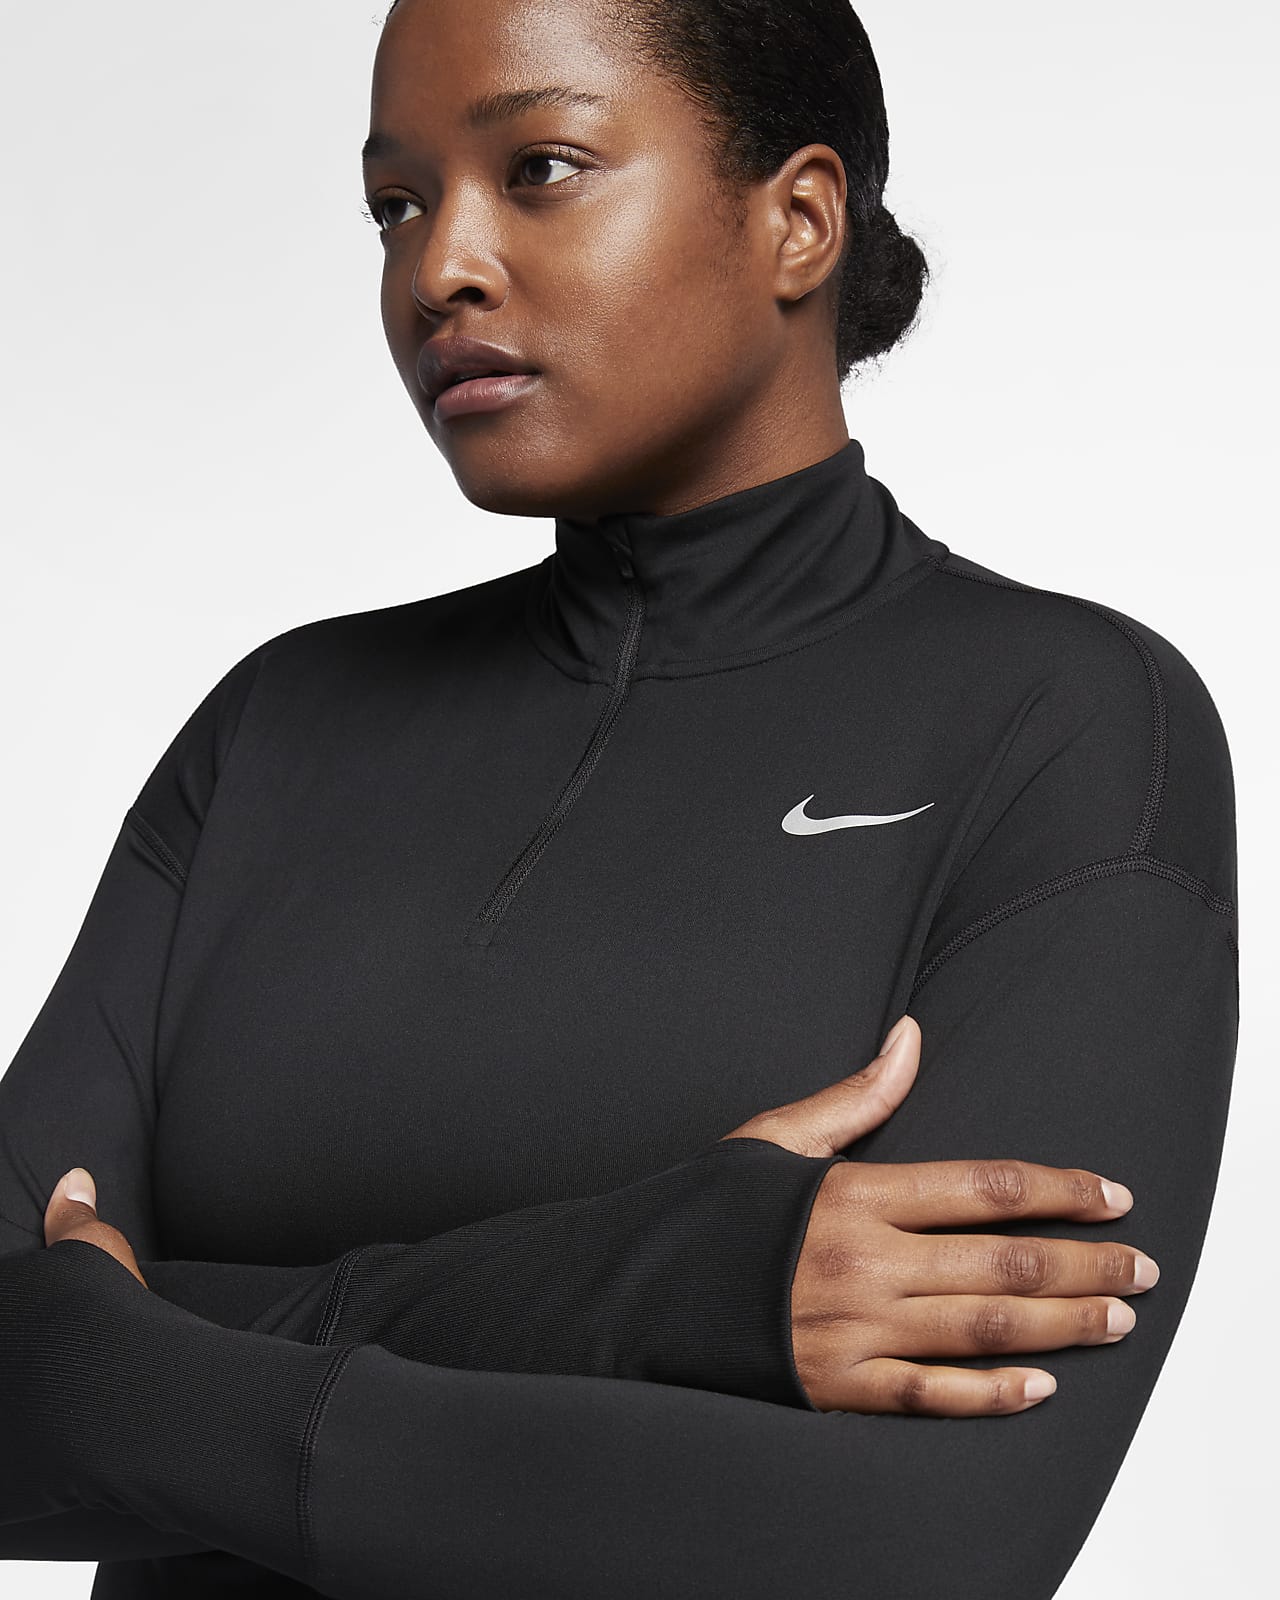 Oven Ontdekking Aanpassing Nike Element Women's Running Top (Plus). Nike.com